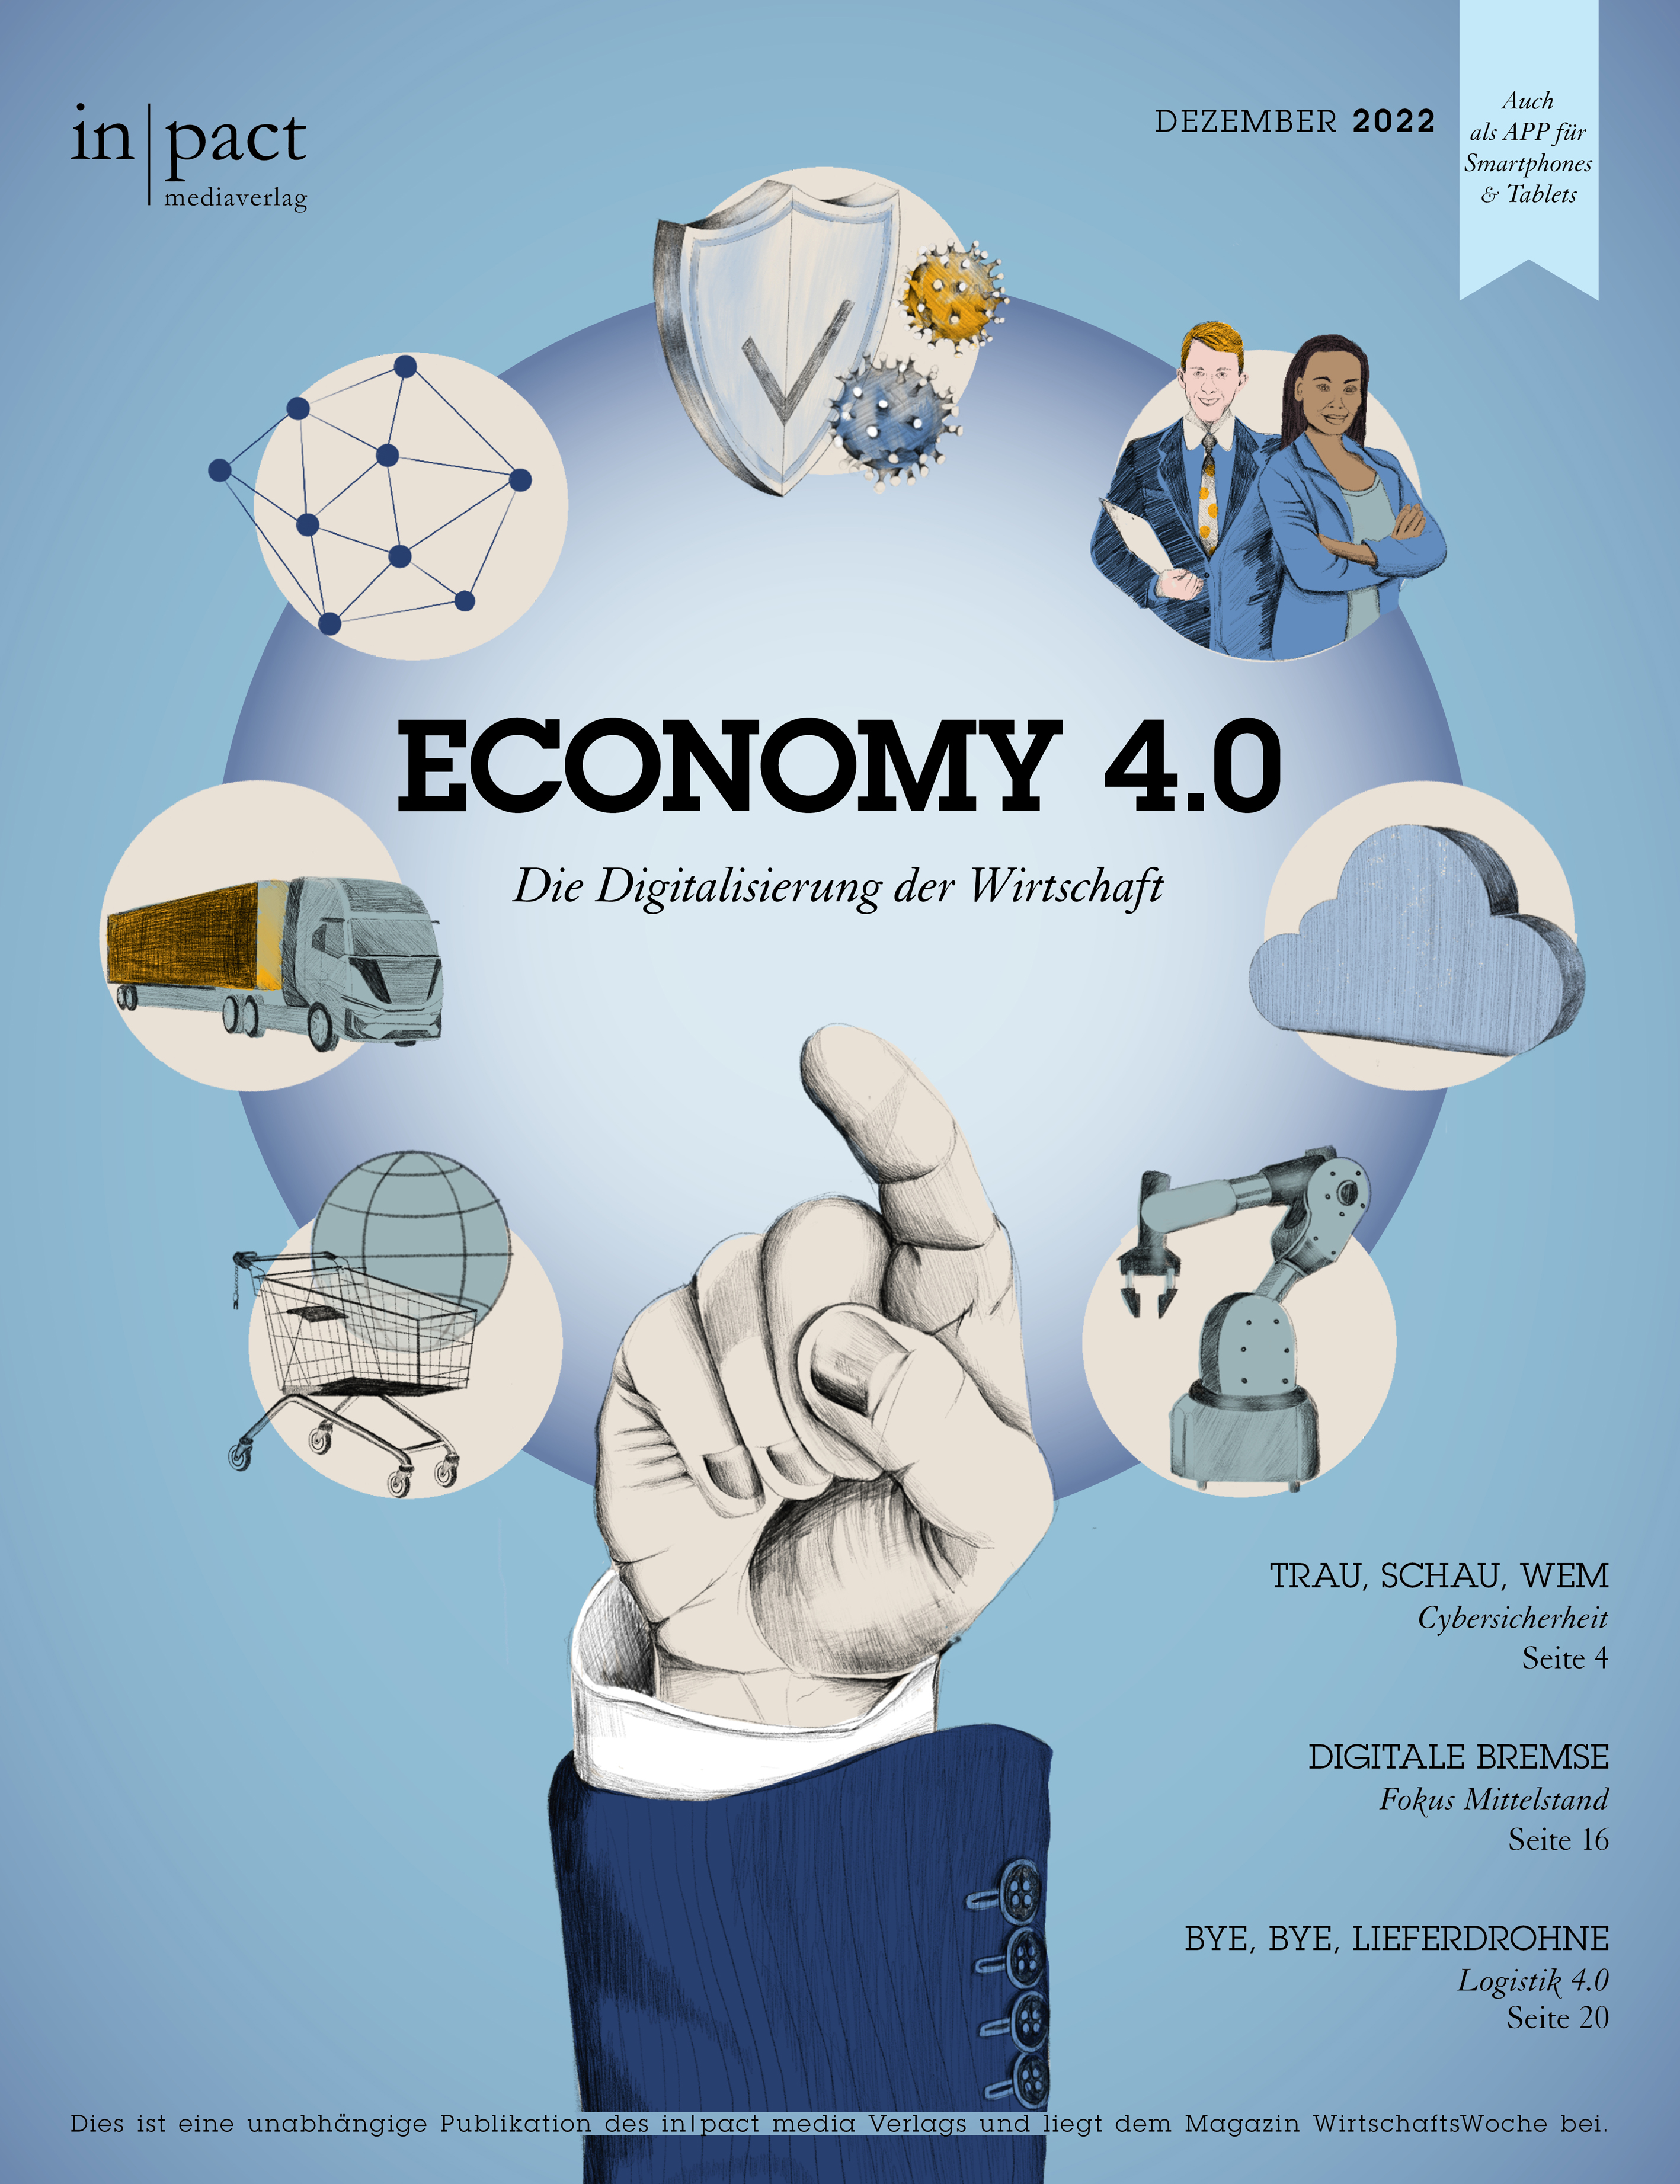 "Economy 4.0 – Die Digitalisierung der Wirtschaft"